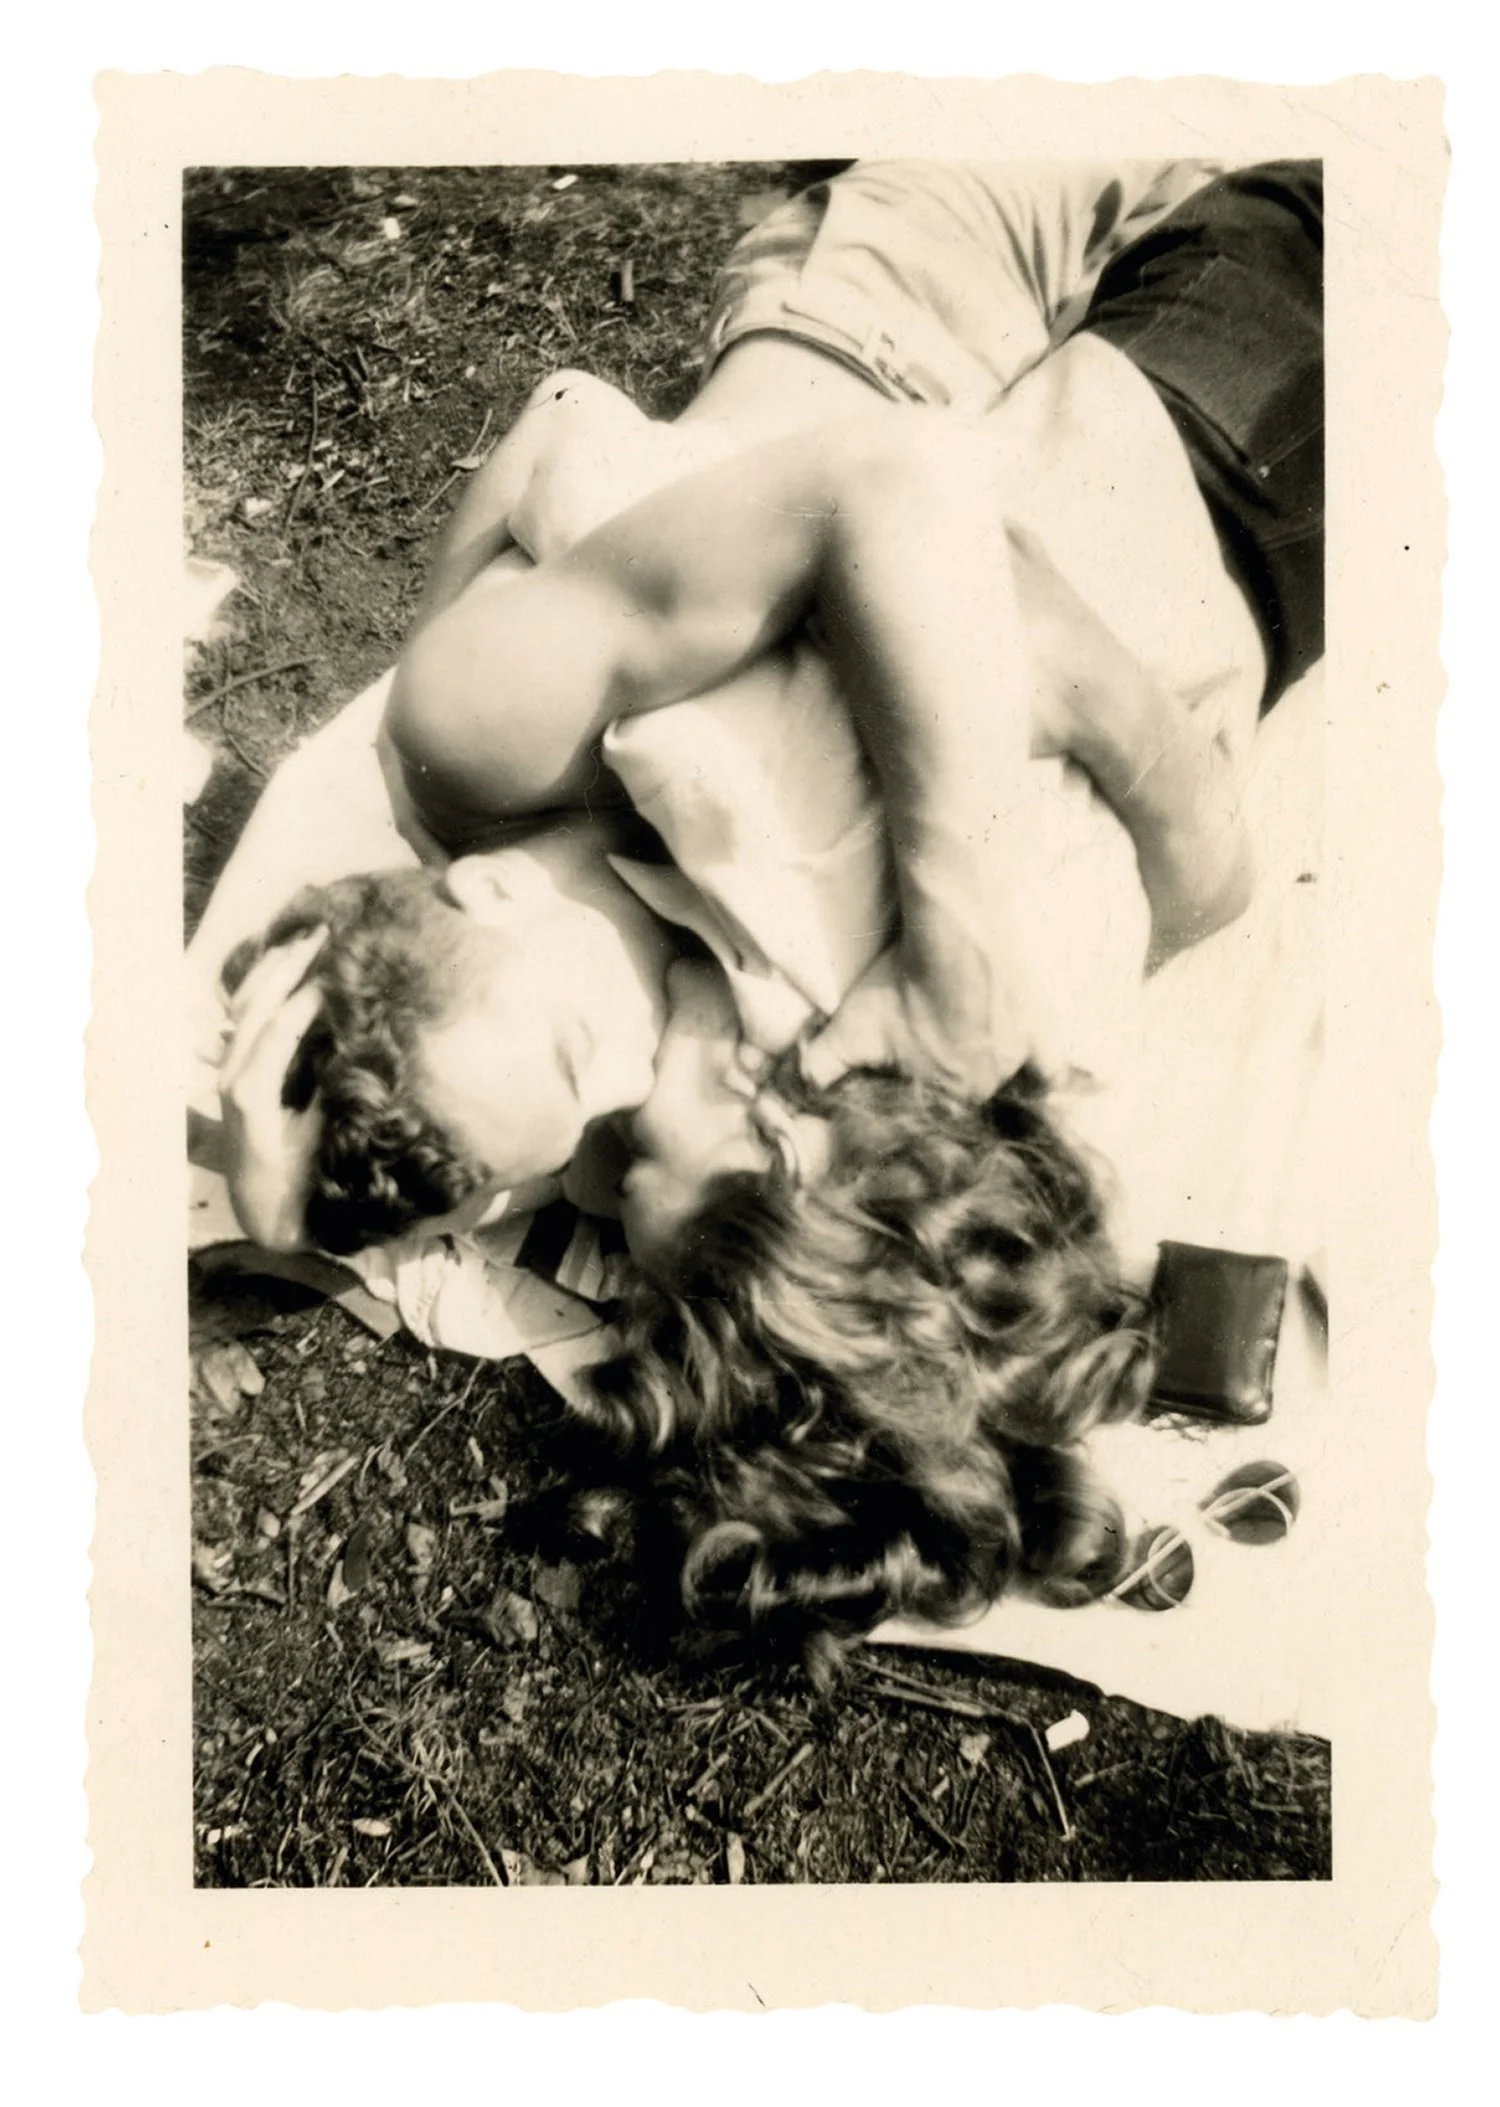 Машина времени: архивные фото о том, как целовались влюбленные 100 лет назад - фото 486031